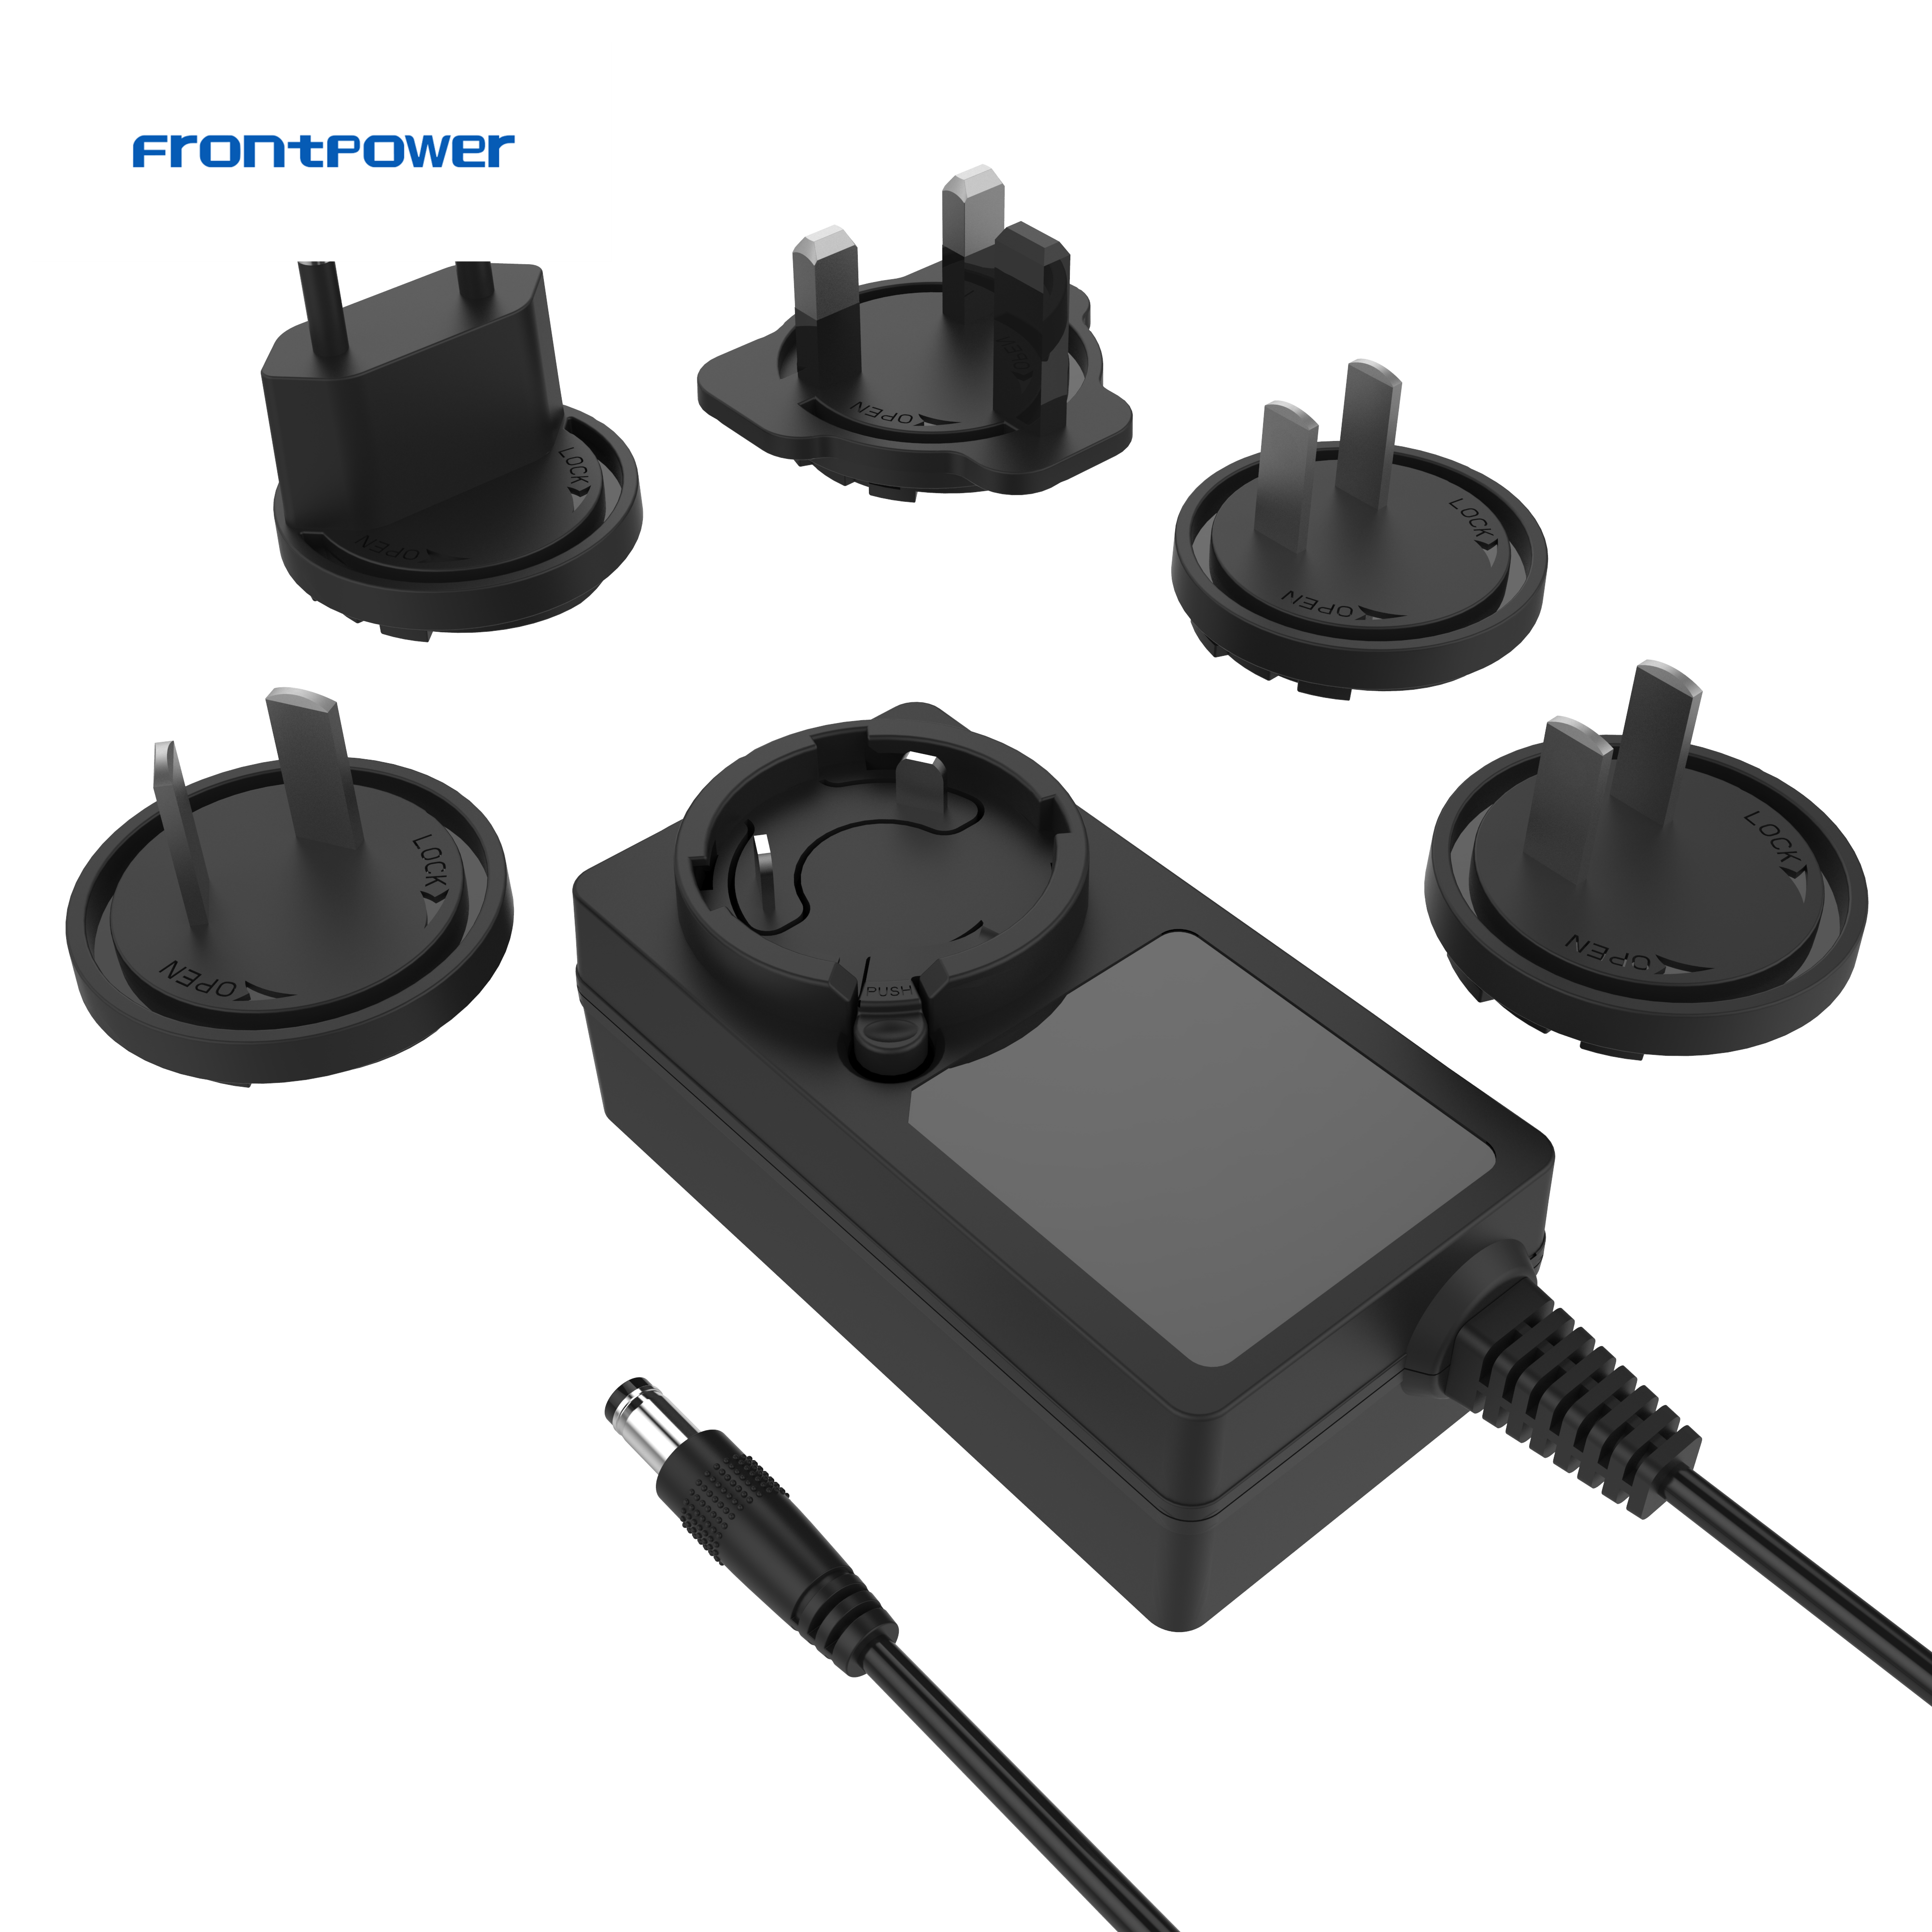 5V 9V 9.3V 12V 15V 24V US EU UK AU Interchangeable Plug Power Adapter Supply Switch ACDC Universal Charger SMPS for Laptop Phone